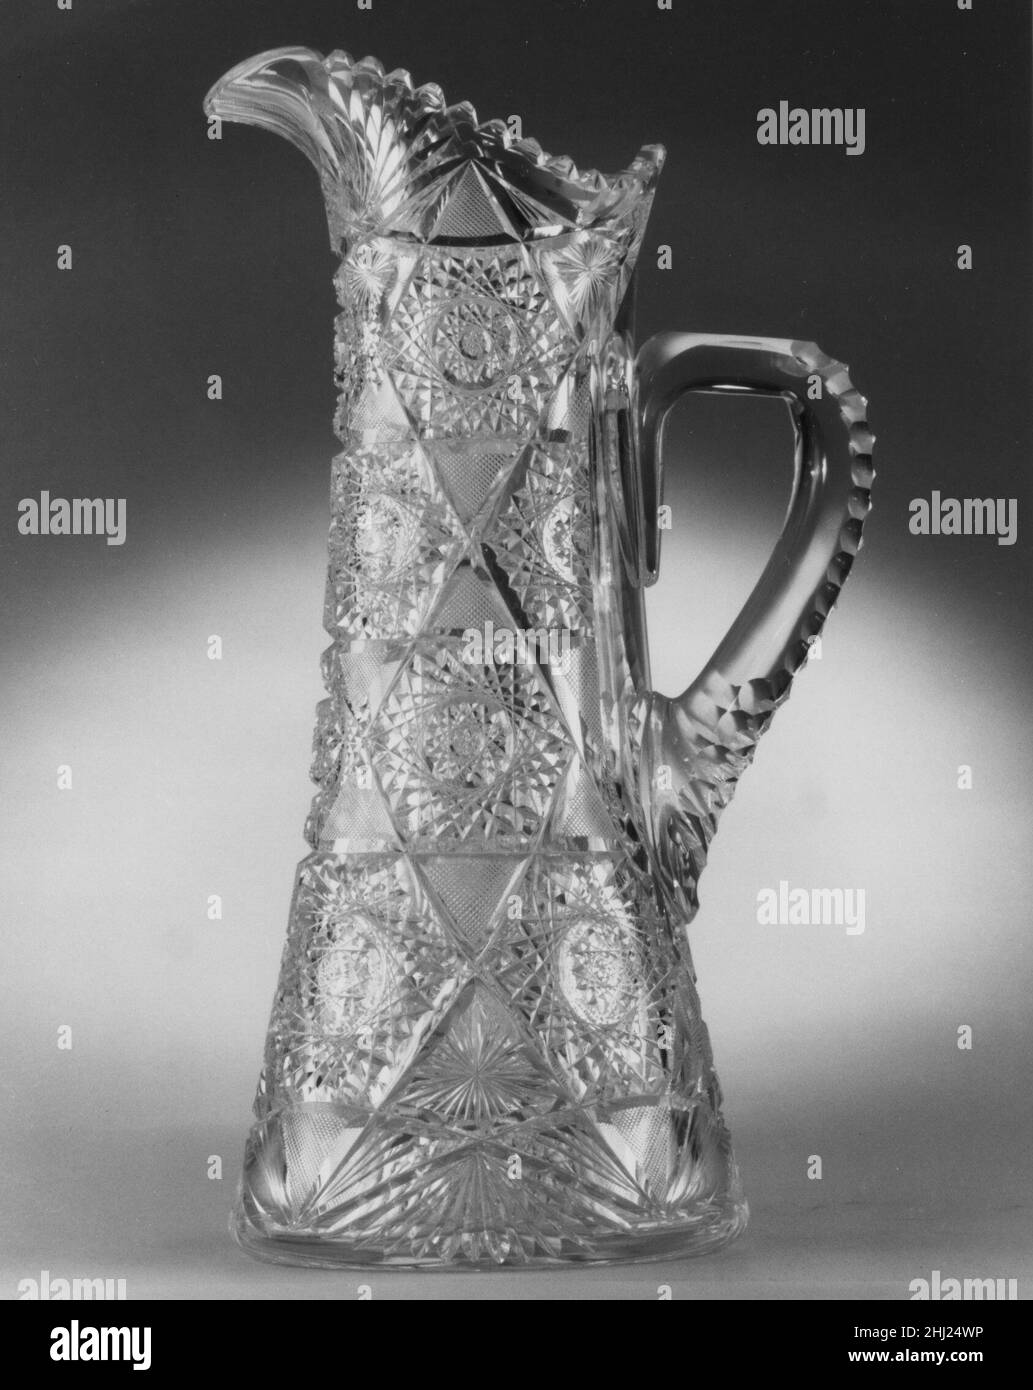 Pitcher 1890 Dorflinger Glass Works les usines de verre fondées par l'émigré alsacien Christian Dorflinger ont sans doute été parmi les plus importantes usines de verre en opération du milieu à la fin du XIXe siècle.Sa première usine était à Brooklyn, New York, d'où il a déménagé ses opérations à White Mills, en Pennsylvanie, où cet objet a été fabriqué.Ce pichet cylindrique aux conceptions finement coupées représente la qualité du verre et la découpe accomplie pour lesquelles ils ont été renommés.Il est descendu dans la famille de Christian Dorflinger.Pichet 5788 Banque D'Images